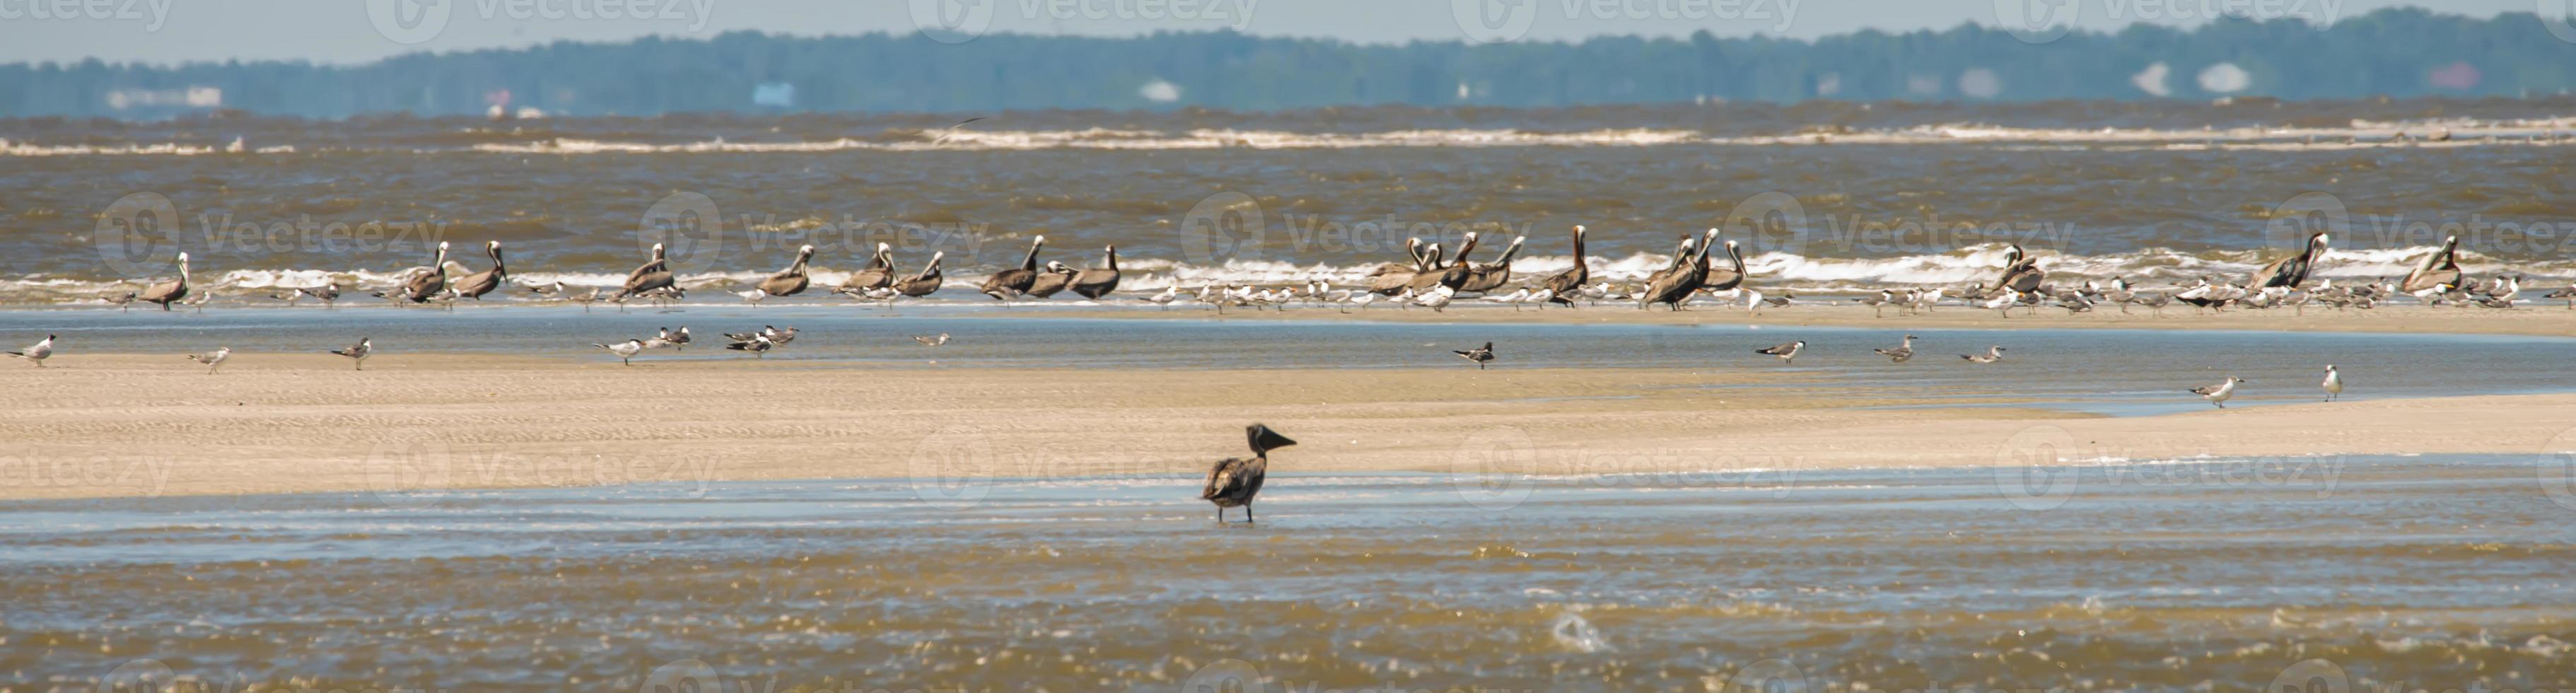 abstracte pelikanen tijdens de vlucht op het strand van de Atlantische Oceaan foto